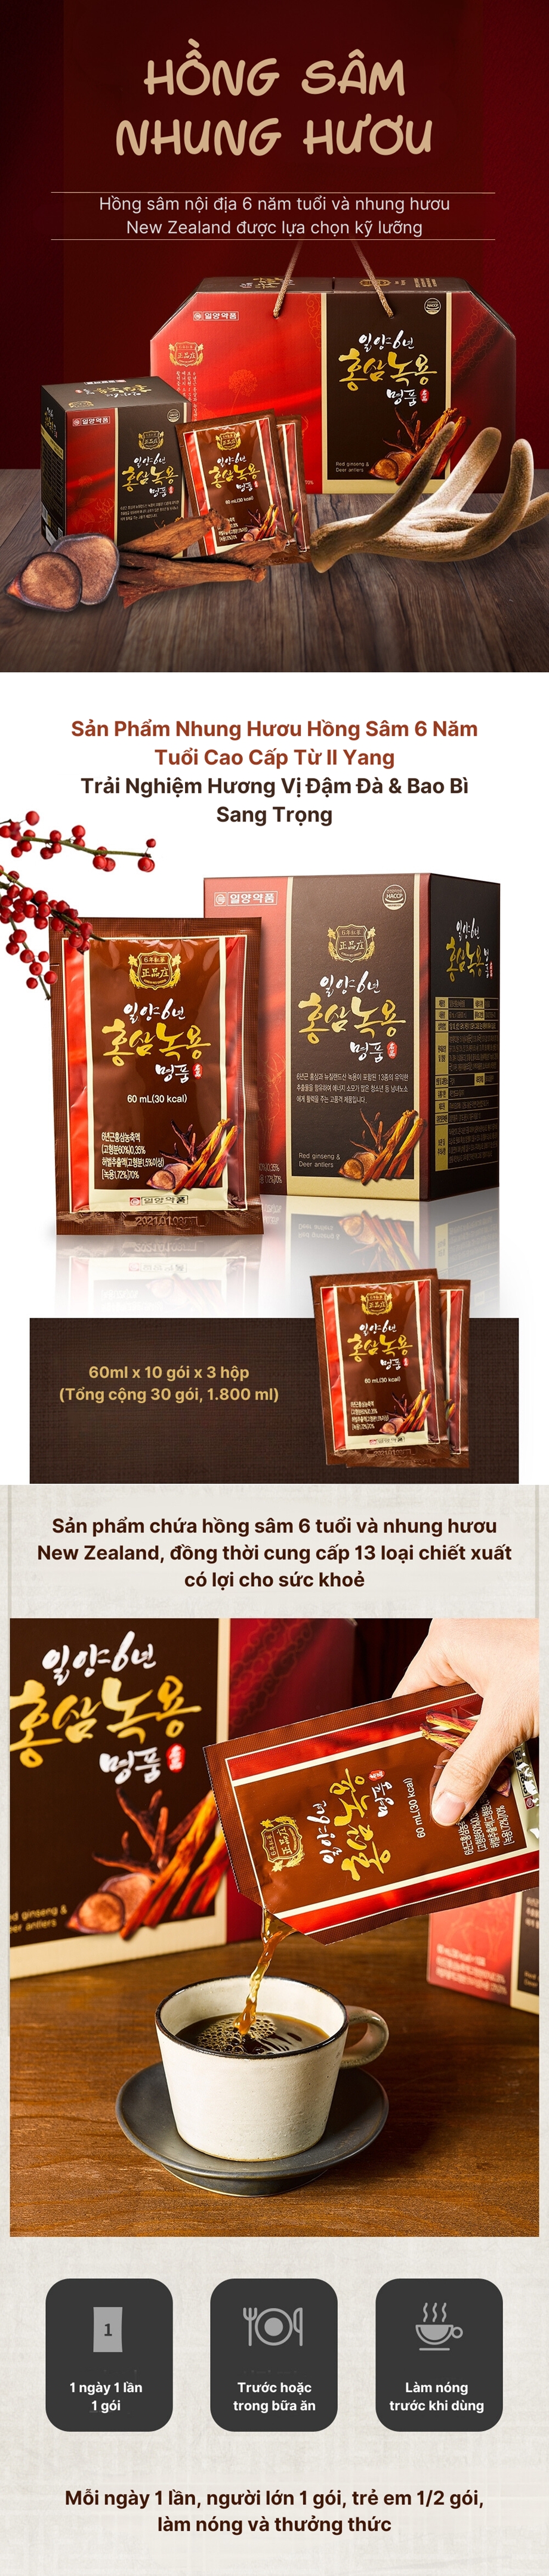 Mua Từ Hàn Quốc Ilyang Pharmacy